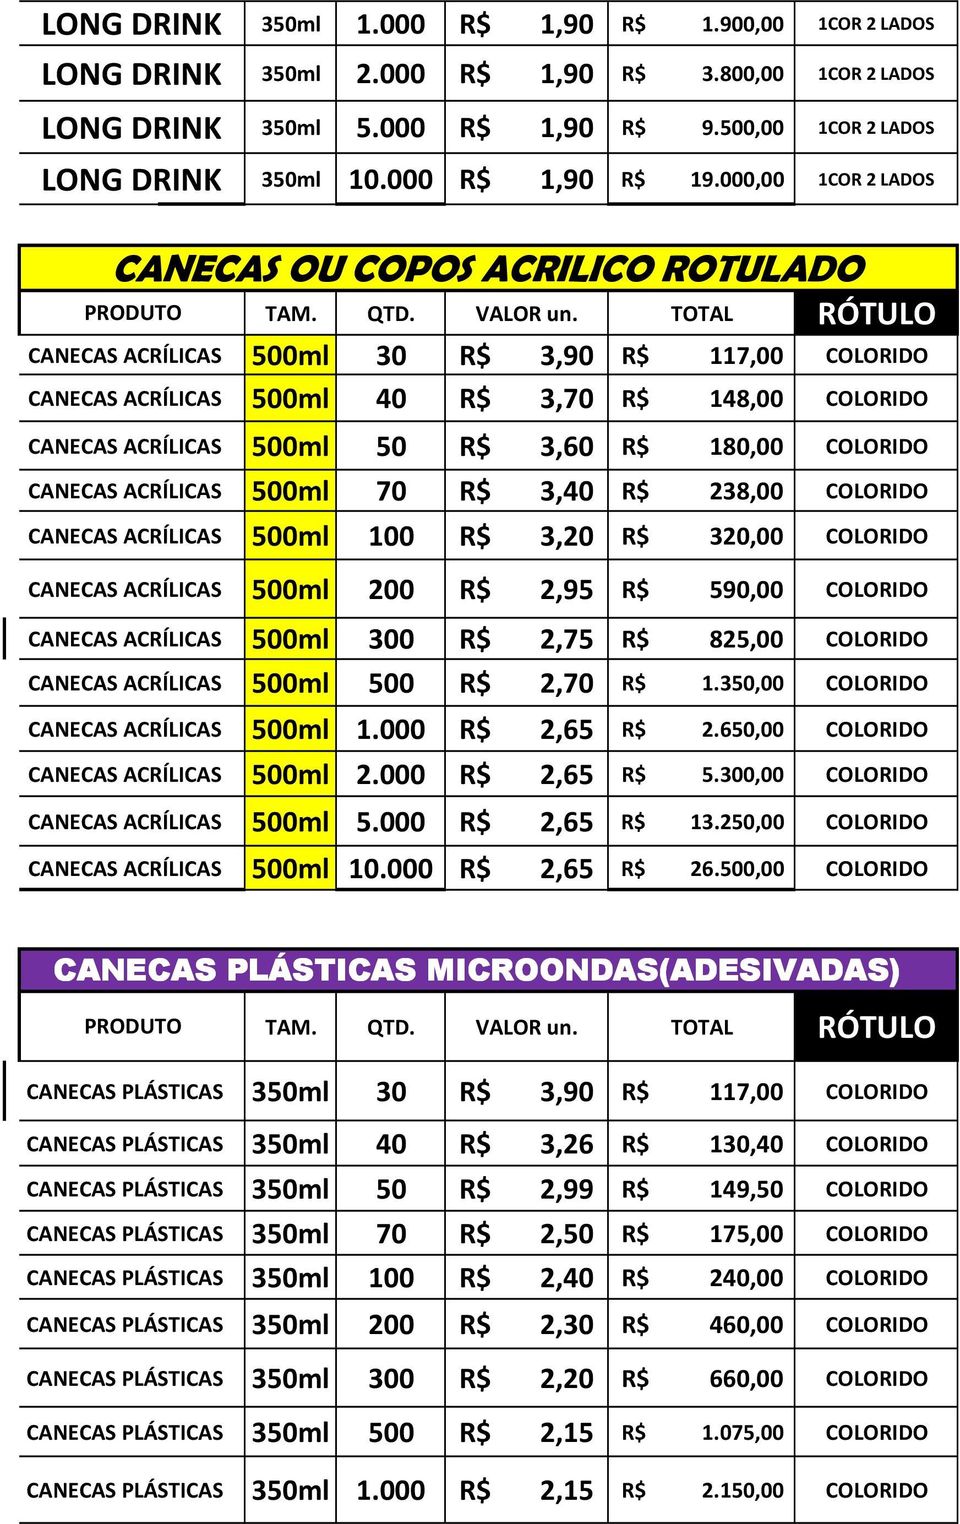 TOTAL RÓTULO CANECAS ACRÍLICAS 500ml 30 R$ 3,90 R$ 117,00 COLORIDO CANECAS ACRÍLICAS 500ml 40 R$ 3,70 R$ 148,00 COLORIDO CANECAS ACRÍLICAS 500ml 50 R$ 3,60 R$ 180,00 COLORIDO CANECAS ACRÍLICAS 500ml